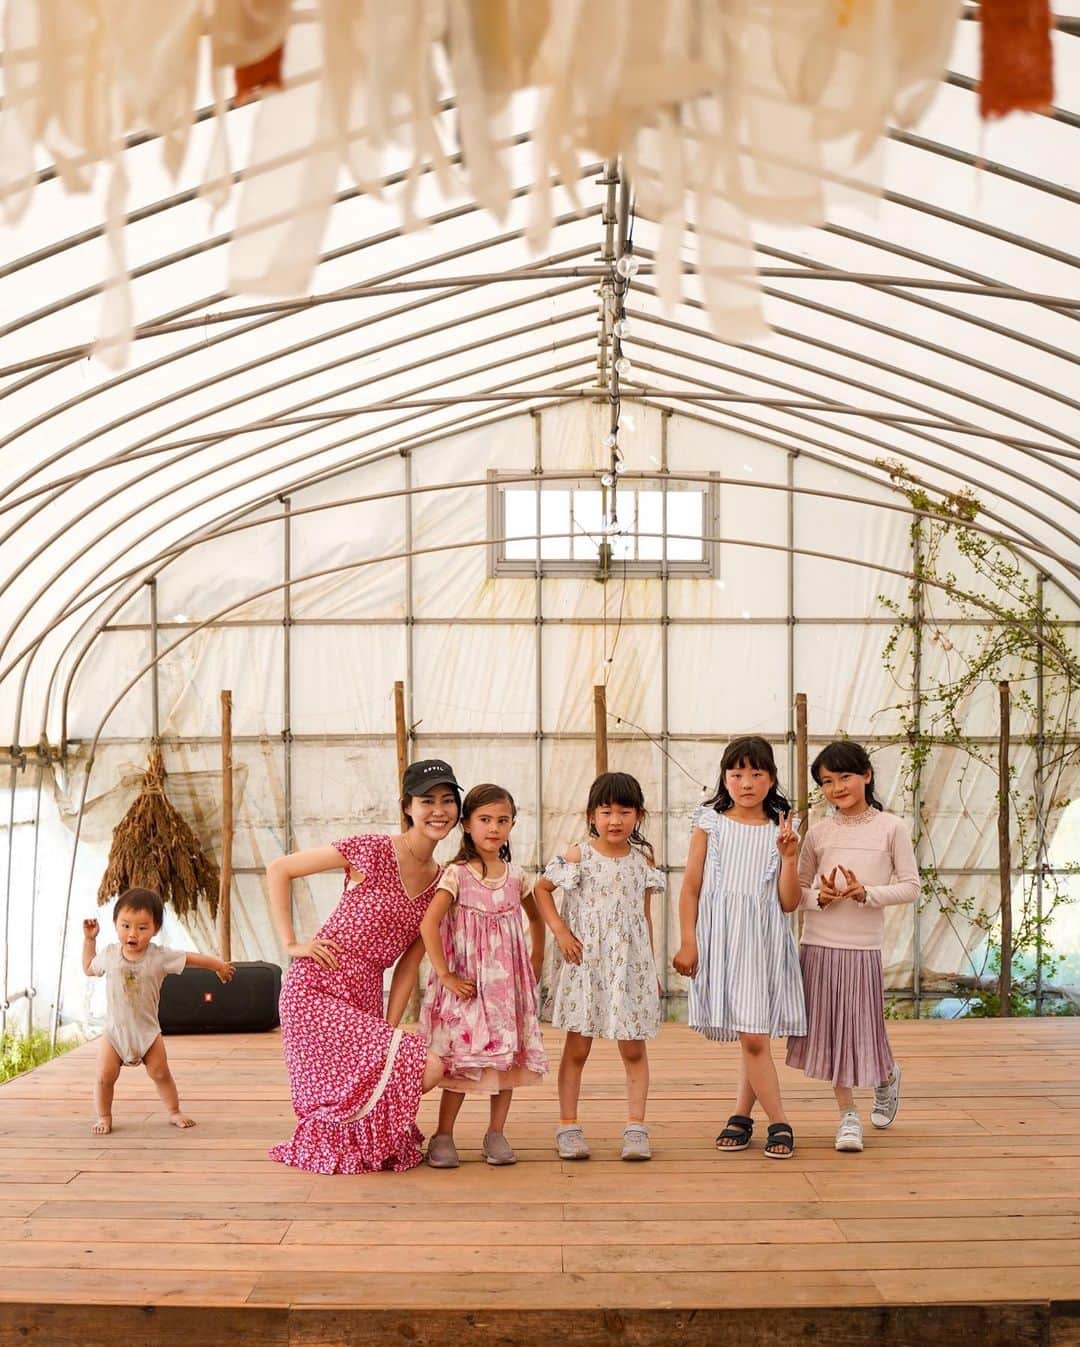 MARIEのインスタグラム：「福島の西会津のエコビレッジ【Dana Village 】へ🌿 ⁡ GWはずっと行きたかった  @danavillage へ行って来ました！  子供の日と言うことで近くの遊び場の【TENTo】で キッズへのモデルウォーキング講座や ファッションショーのお手伝いもさせてもらい、 とっても楽しくて貴重な経験となりました✨ ⁡ @fukunomoto2020  ⁡ ビニールハウスで行われたファッションショーでは 音楽や構成も任せていただき楽しかった✨ ウォーキングを教えるのは初めてでドキドキしたし 最初は子供たちも緊張していたけど、 空き時間に沢山練習したかいもあって最後の方は 手を振ったりポーズを決めたりとノリノリで とーっても可愛かった🥹💕💕 ⁡ ⁡ ずっとお会いしたかったみのりさん @minoriogawa は 生でお会いすると優しい雰囲気はそのままで、 どこかゆるい雰囲気もあって、 ありのままの美しさがなんだか女神様のようでした…✨ ⁡ ⁡ 3人いるお子さん達もすごく自然体で過ごしていて、 仁も一緒に遊んで人生で1番 はしゃいでたんじゃないかなというくらいの テンションの上がりようでした。 ⁡ 暮らし方や子育てについて、 3日間だけでもすごく刺激をもらったので いつかもっと長く滞在したいなぁ。 ⁡ Dana Village にいるボランティアやスタッフの方たちも みんな温かくてとっても優しかった☺️ ⁡ ⁡ 1.ファッションショー終わりに可愛い キッズモデルちゃんたちと皆で（端っこになんかいる…） 2.Dana Village の前でみのりさんファミリーと 3〜6.ウォーキングレッスン 7. アルナちゃんに1回抱っこしてもらったら味をしめて ずっと「ダッコ！ダッコ！」とせがむ仁 8.アルナちゃんノラキくんと3人仲良く絵本タイム （こういう光景を見ると兄弟欲しくなる…！） 9.ファッションショーリハーサル（？） ⁡ ⁡ ⁡ @awake_and_official のホリスティックヘルス講座で みのりさんが講師を務めていたり、 ゆりちゃん @yuri_merci22 がDana Villageにいる様子を 発信していて興味を持っていたので、素敵なご縁で嬉しい。 きっかけをくれたゆりちゃんありがとうございます🤍 ⁡ ⁡ 往復の運転とカメラマンも務めてくれたパパさん、 お疲れ様でした＆ありがとう🙏🤍  #danavillage#エコヴィレッジ#エシカルな暮らし#エシカルな生活#ファッションショー#キッズファッションショー」